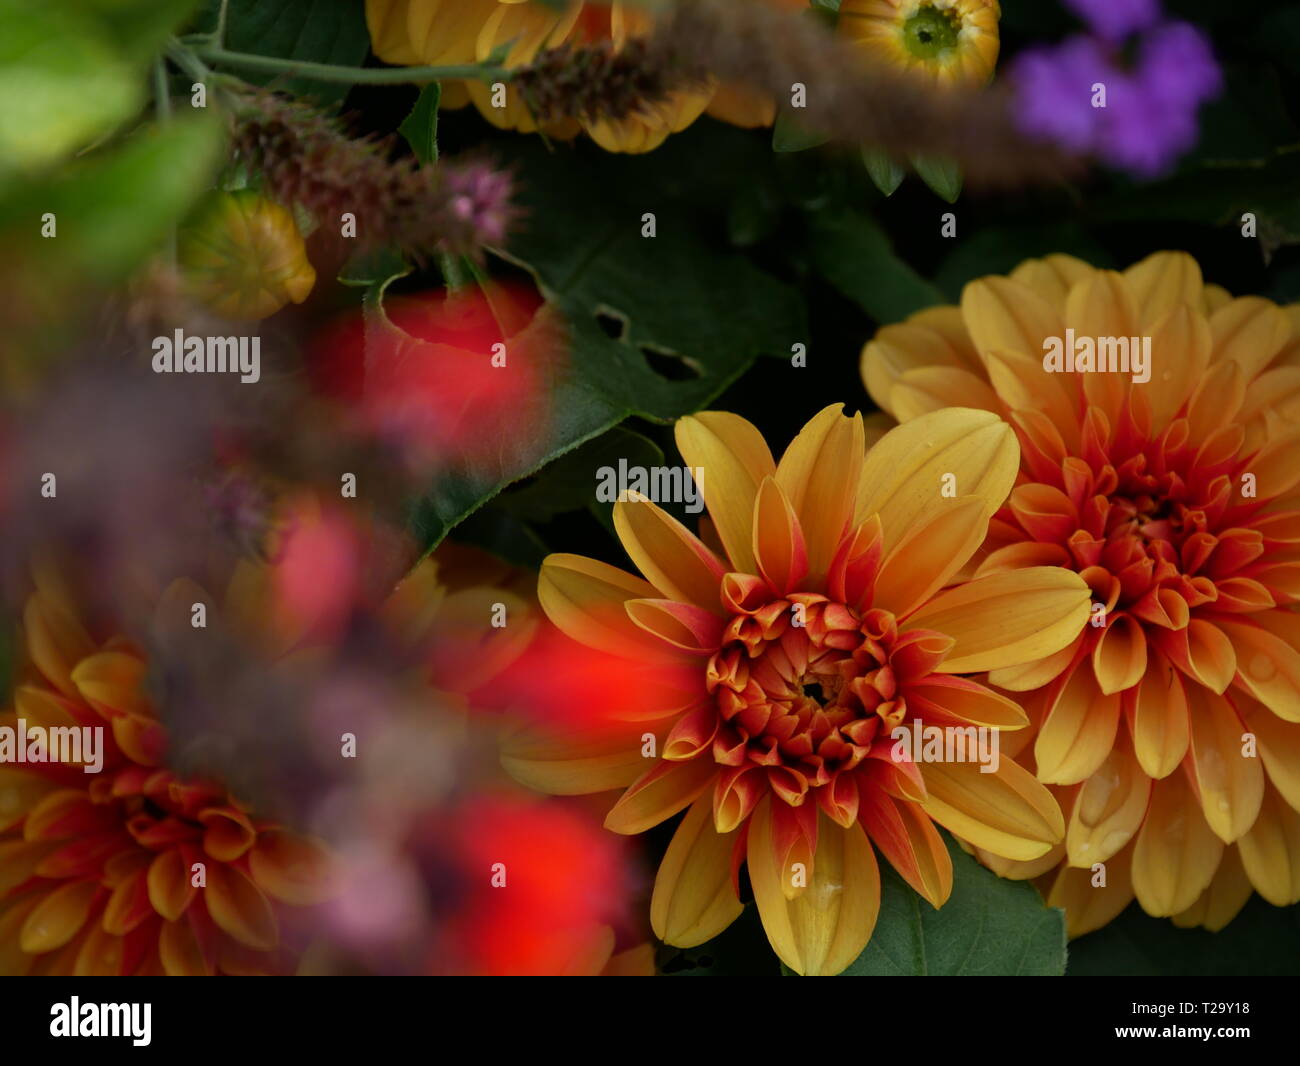 Flower meadow with flowers Stock Photo - Alamy